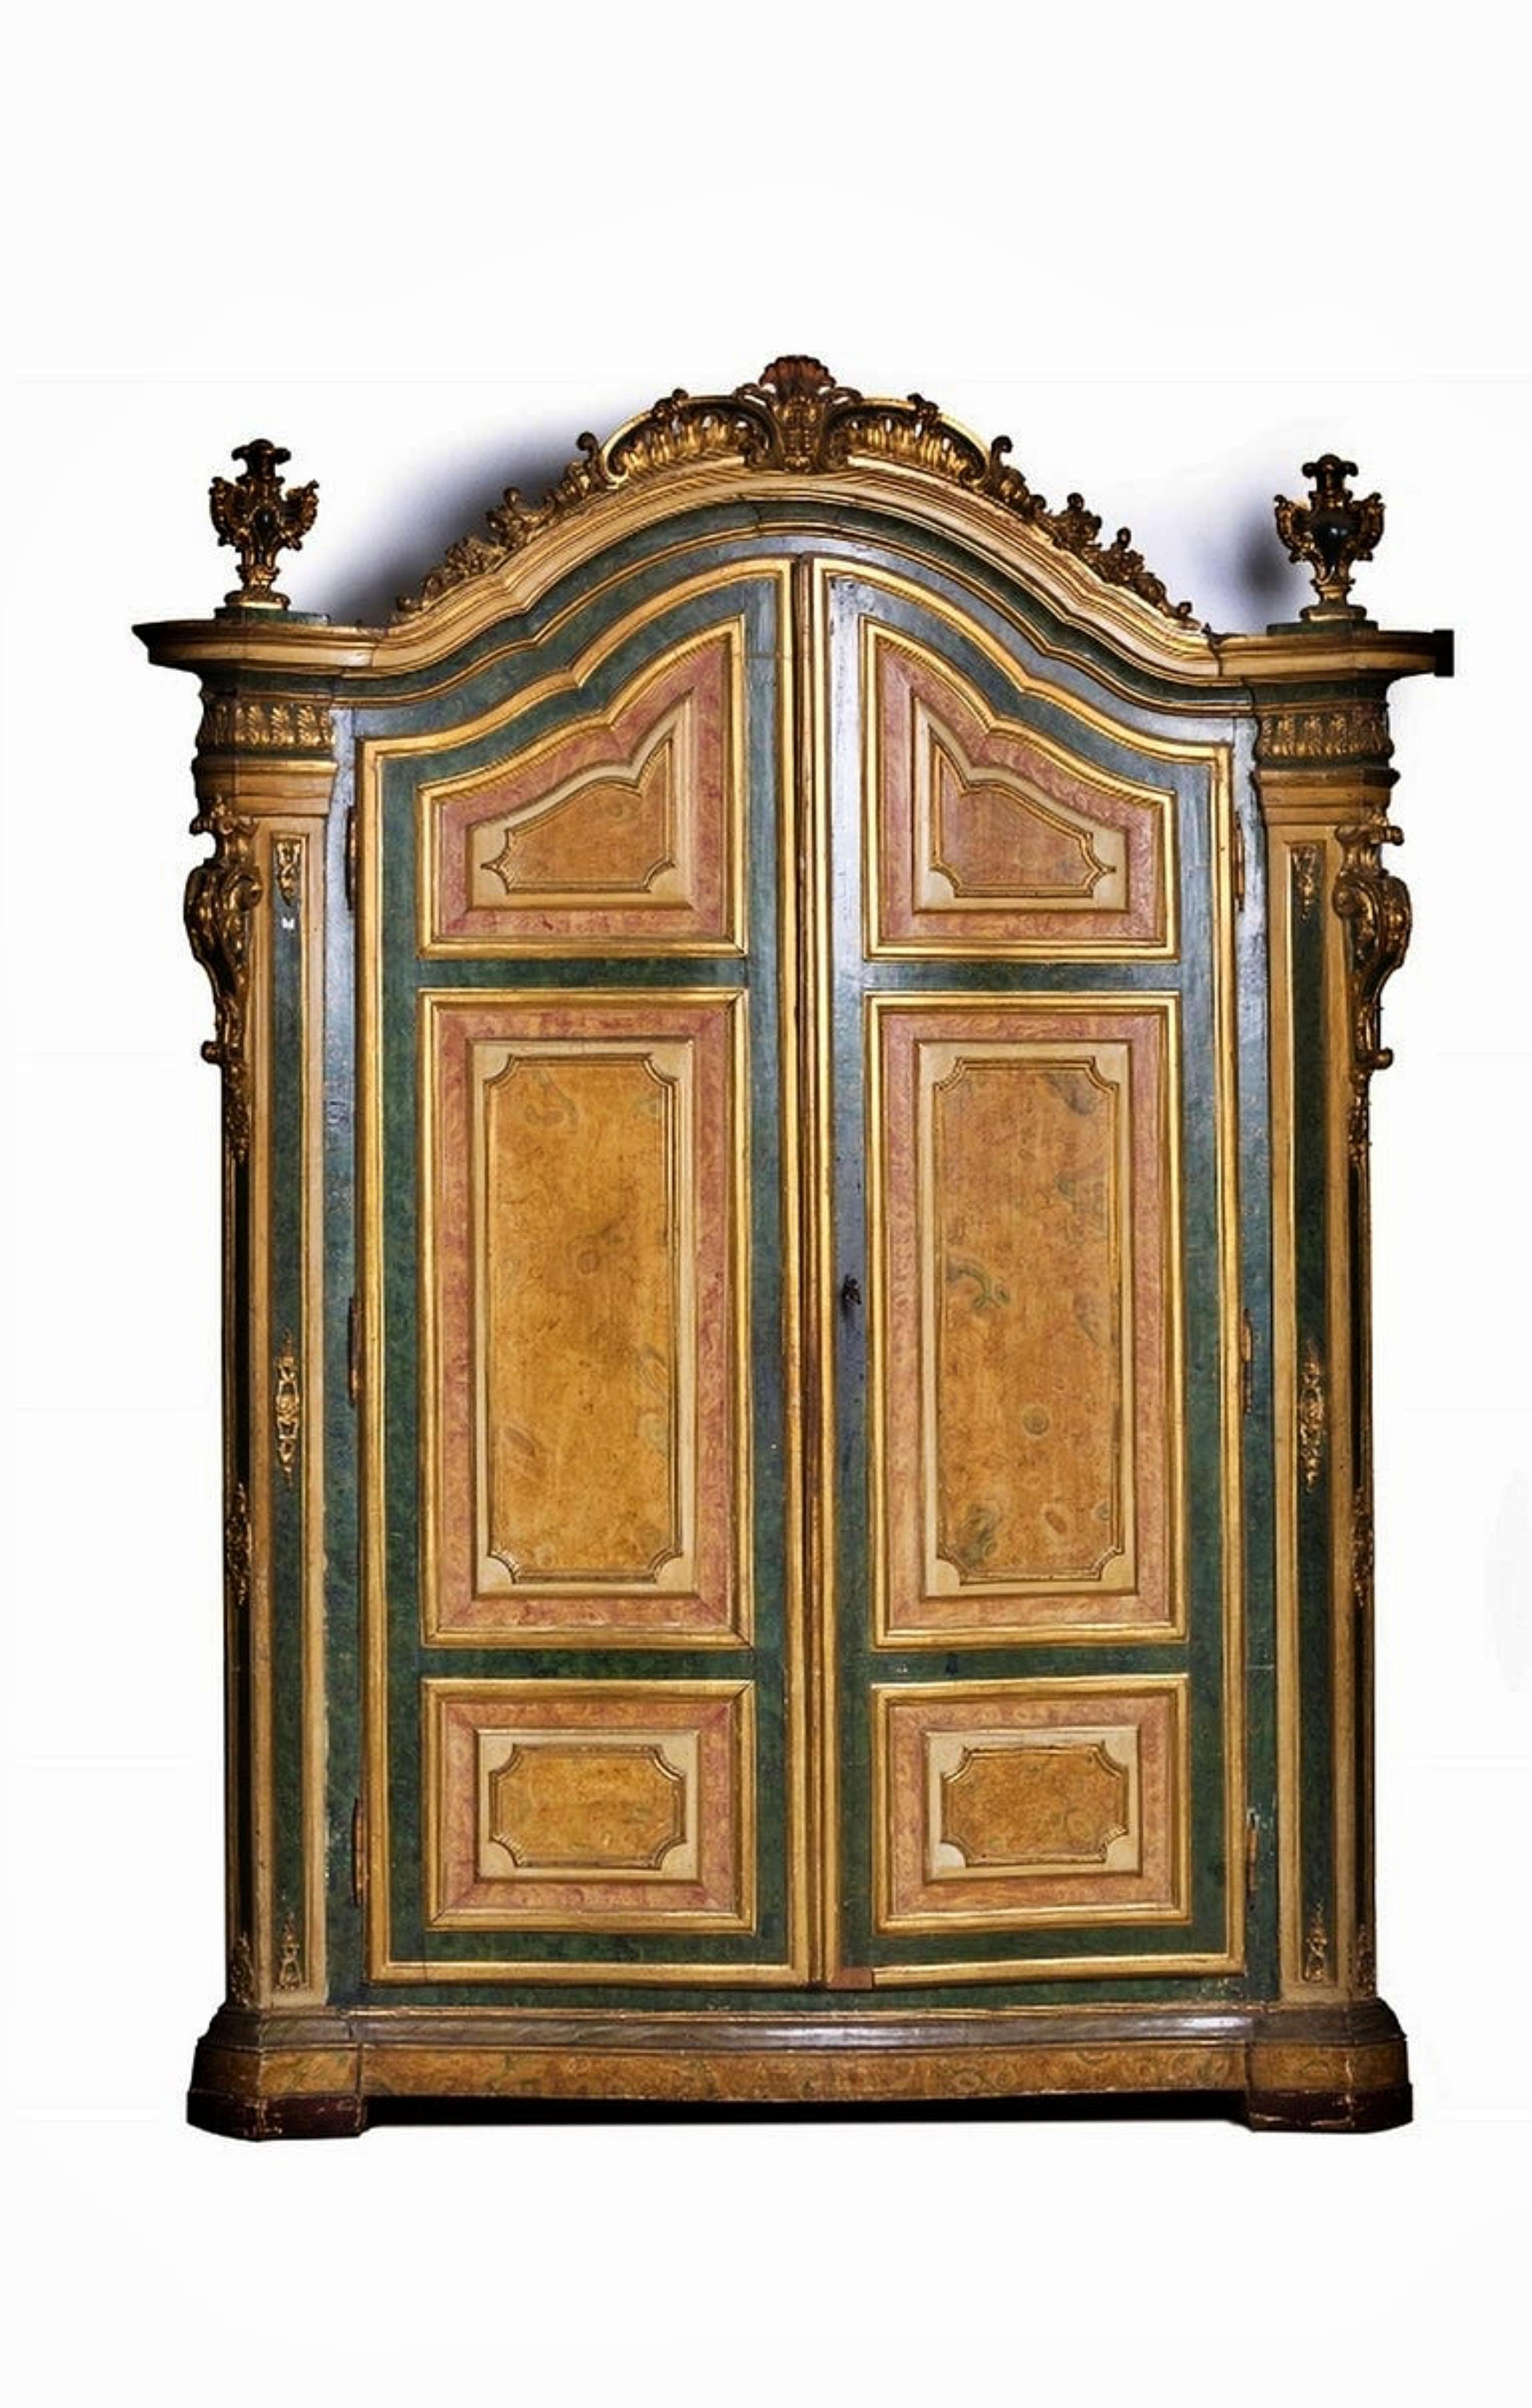 Rare cabinet de Church's
Portugais du XVIIIe siècle
en bois peint, sculpté et doré.
Armoire à deux portes. Intérieur avec trois tiroirs.
Élévation avec cadre en bois sculpté et doré.
Défauts mineurs.
Mesures : 277 x 190 x 67 cm
Cabinet publié dans